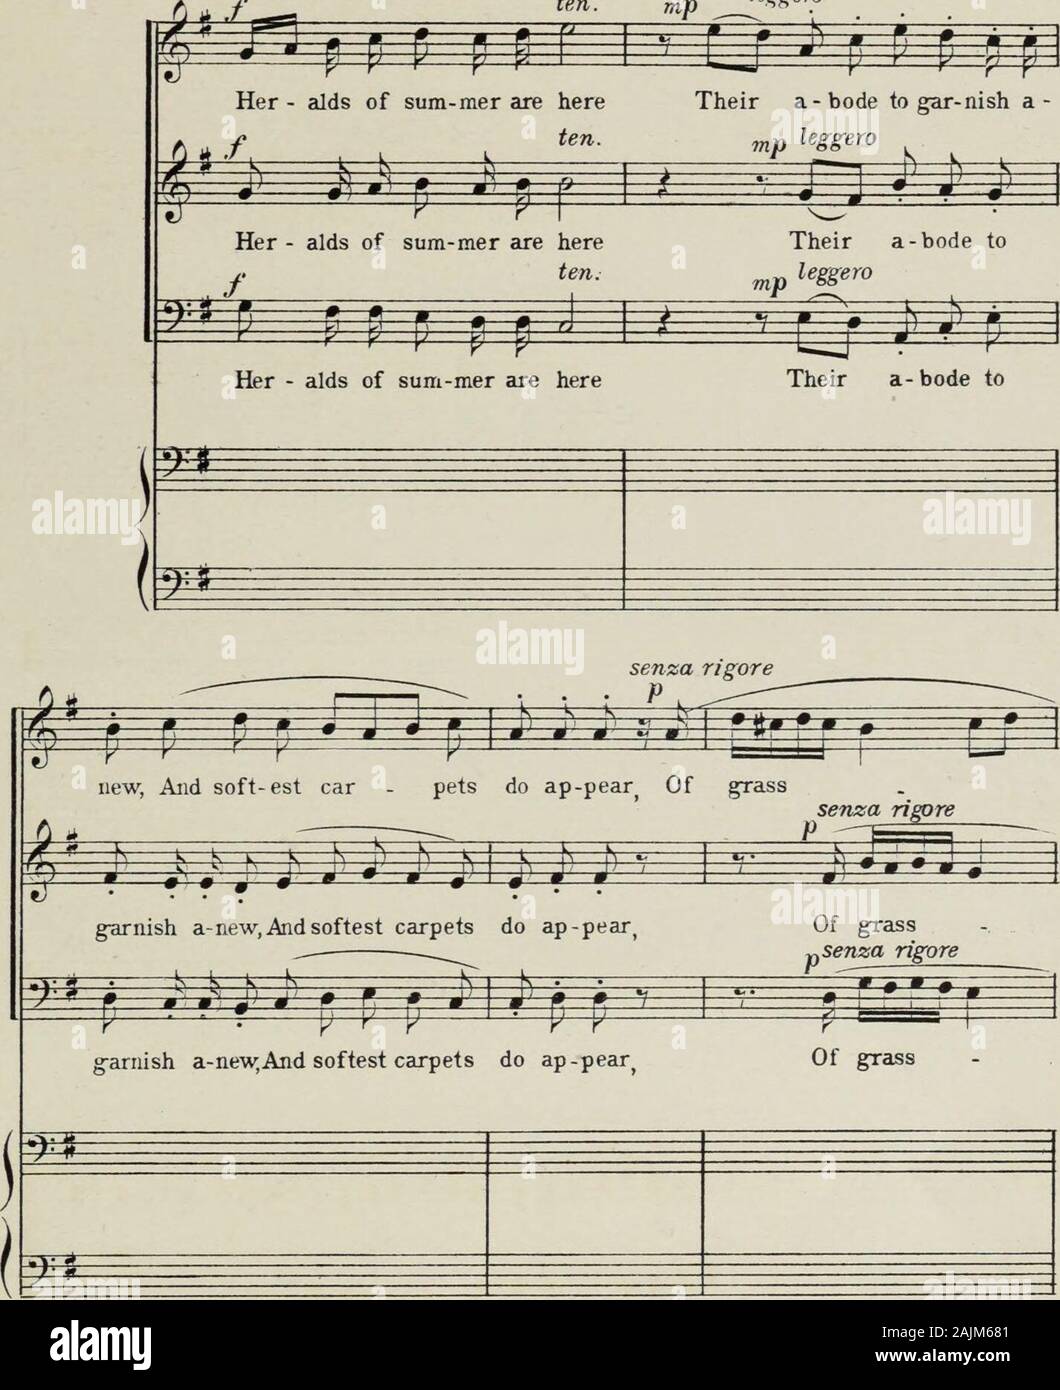 Vier Chöre in alten Sonatenform für die drei Männer stimmen, mit Präludien und Intermezzi für Harfe, Orgel oder Klavier. ihre Angriffs- und Verteidigungsmittel - ure.  z p " -l r-r ^^^^o^ • fl 1 - 1 1 - p ffff. P==? • *11|pi Y Y vier Chöre zu einem Freund Boten des Sommers SIND HIER CHARLES DORLEANS CARLOS SALZEDO Trans. Gertrude Maud Norman New York - Der H.W. Grau Co., alleinige Ag - ents für NOVELLO & Co., Limited - London Allegrramente (J = 96),     leggerQl. Copyright, 1918, von der H.W Grau Co. Stockfoto